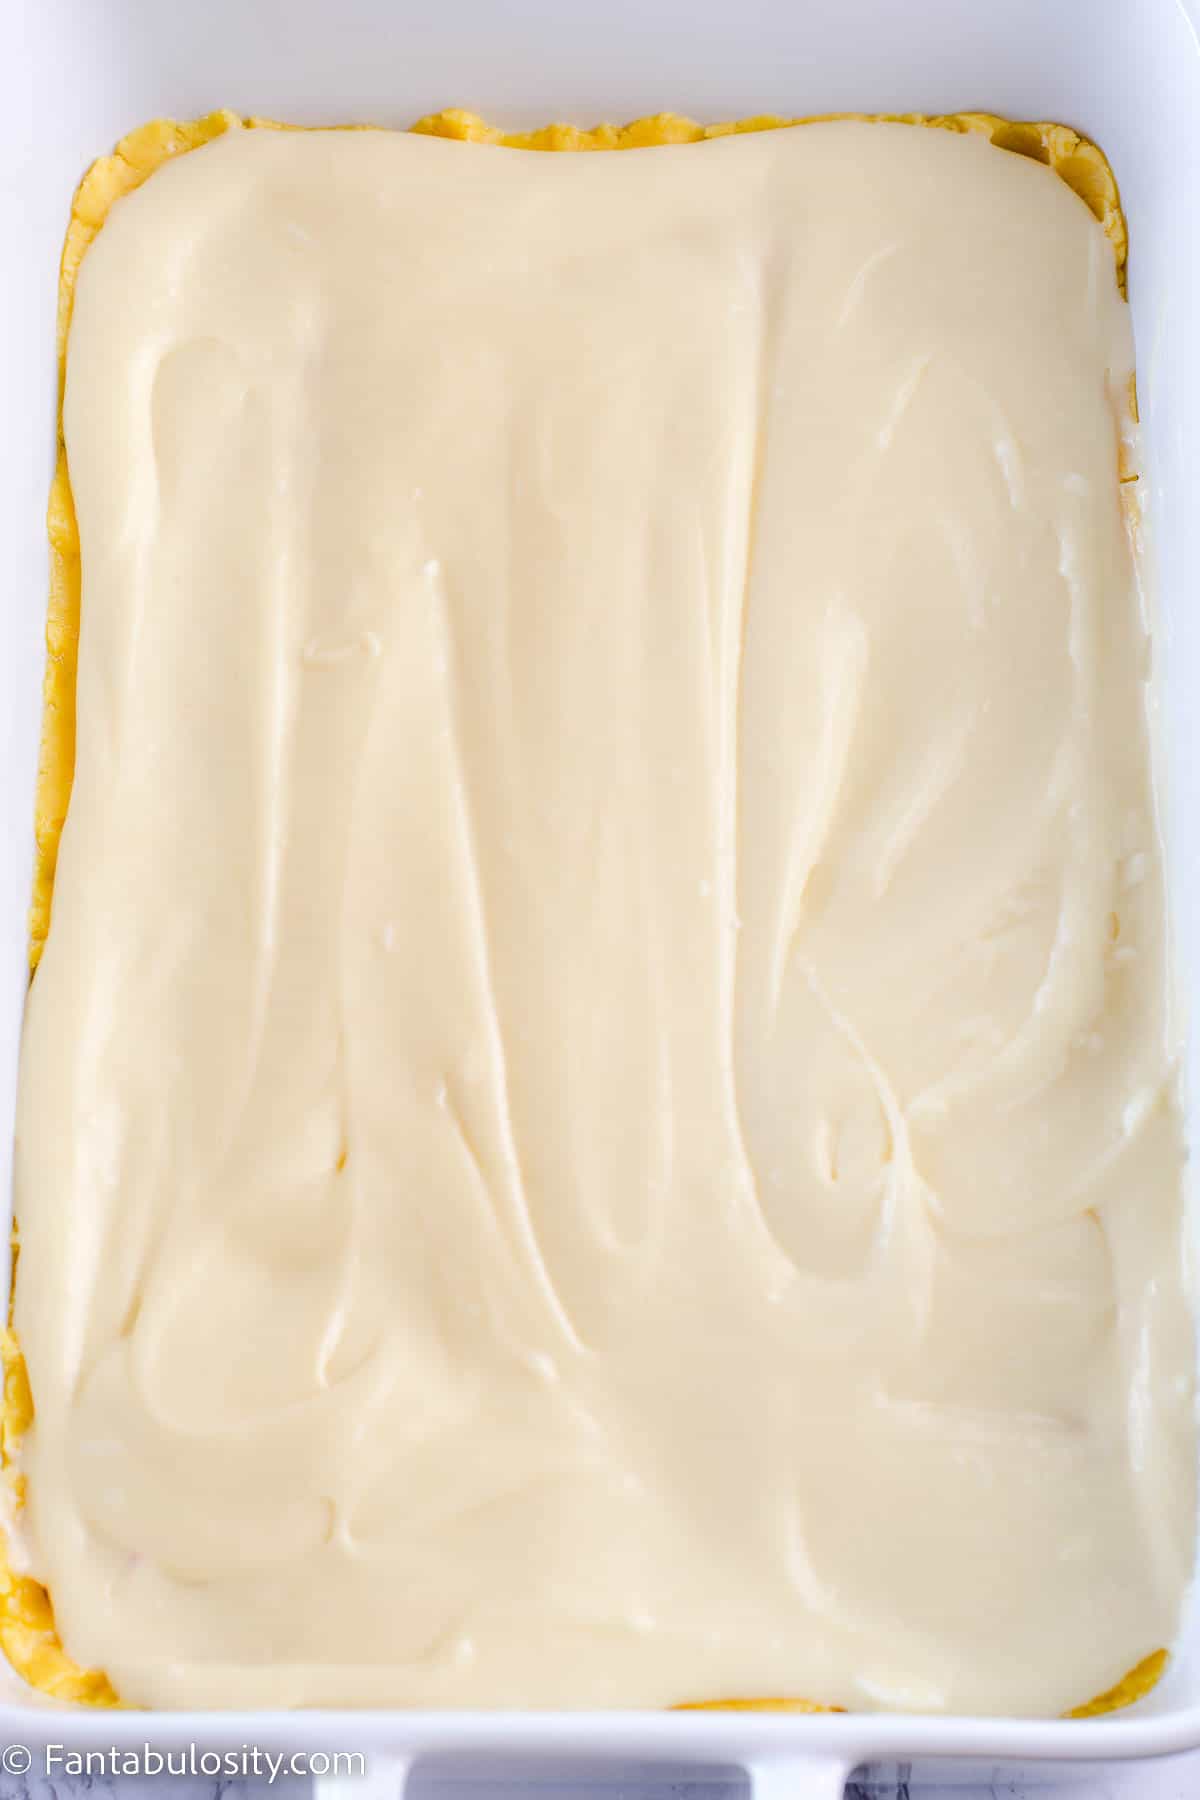 Cream cheese mixture spread evenly across cake